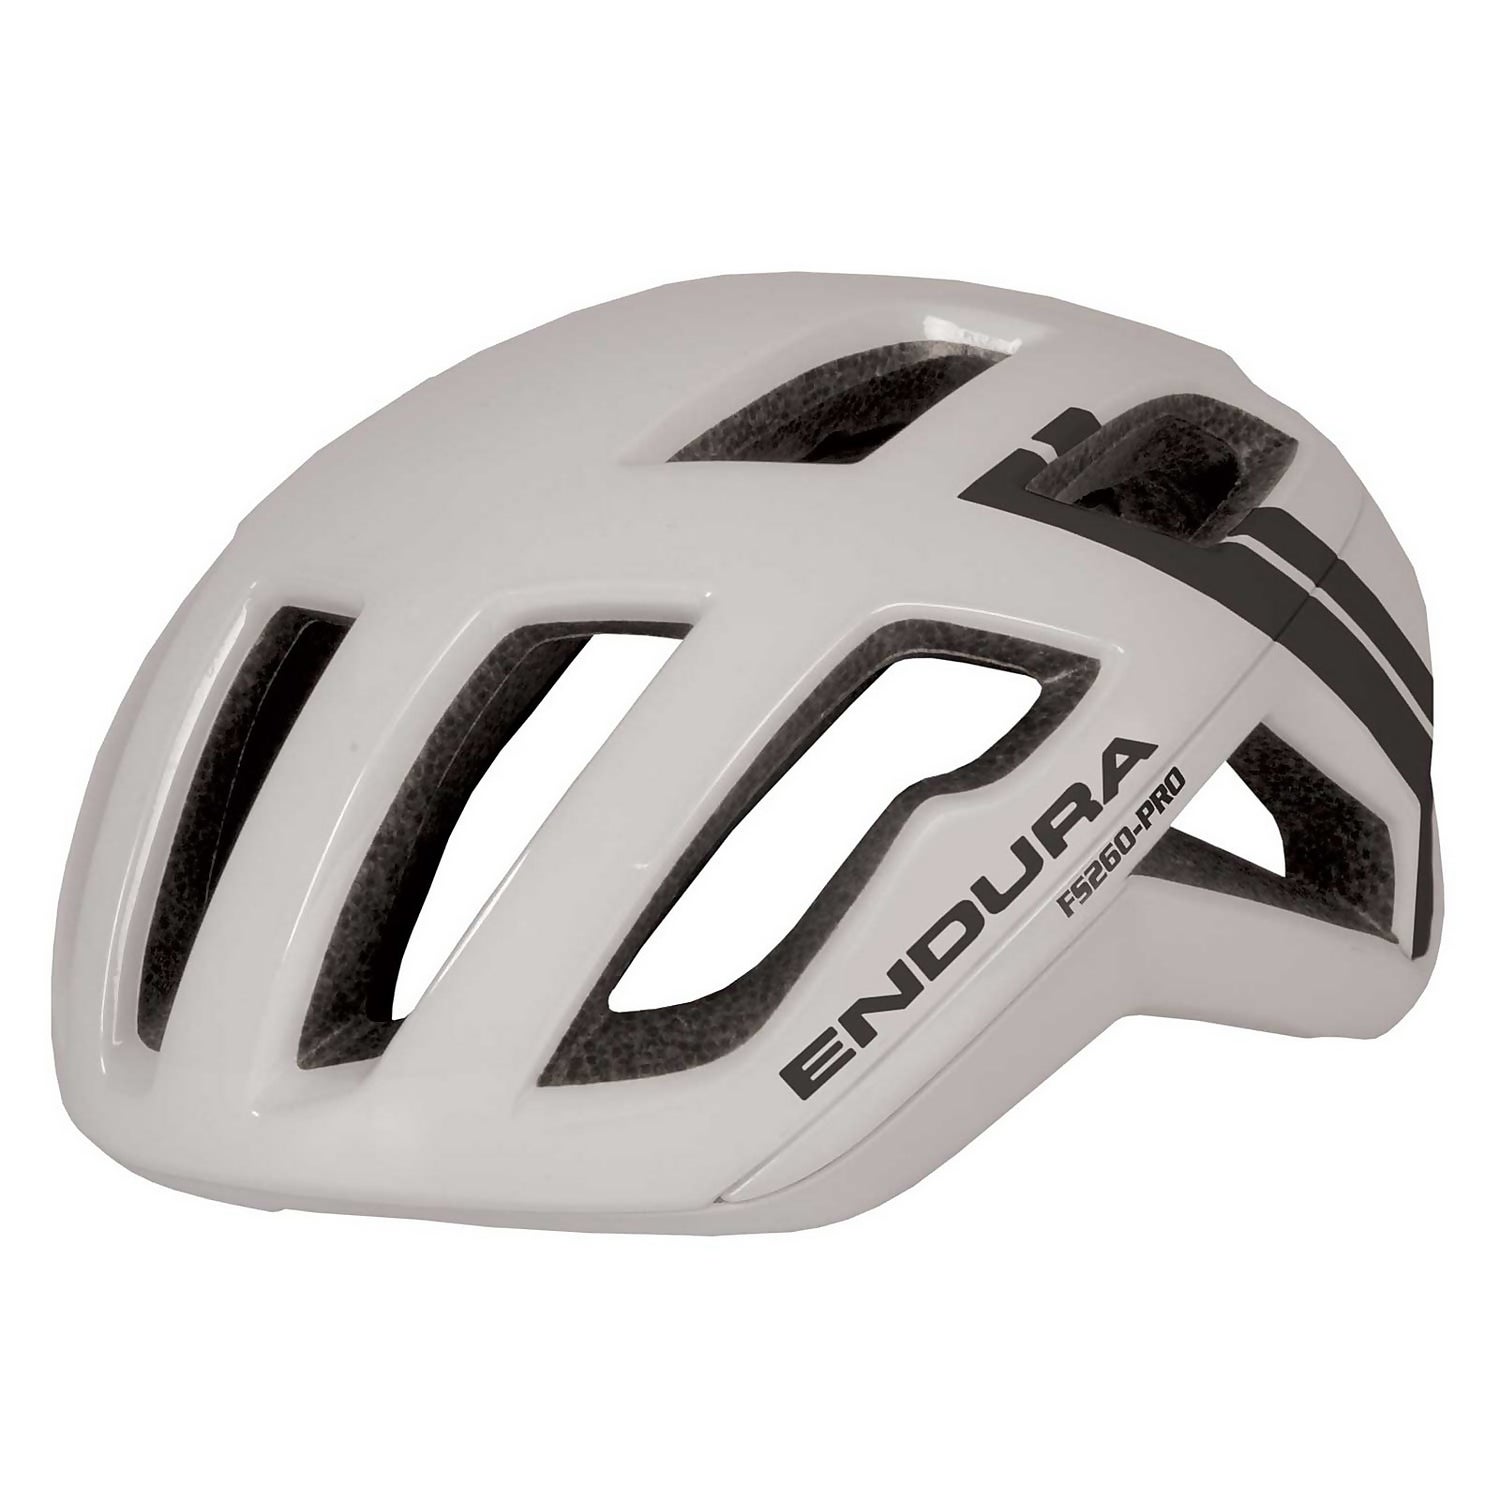 Men's FS260-Pro Helmet - White